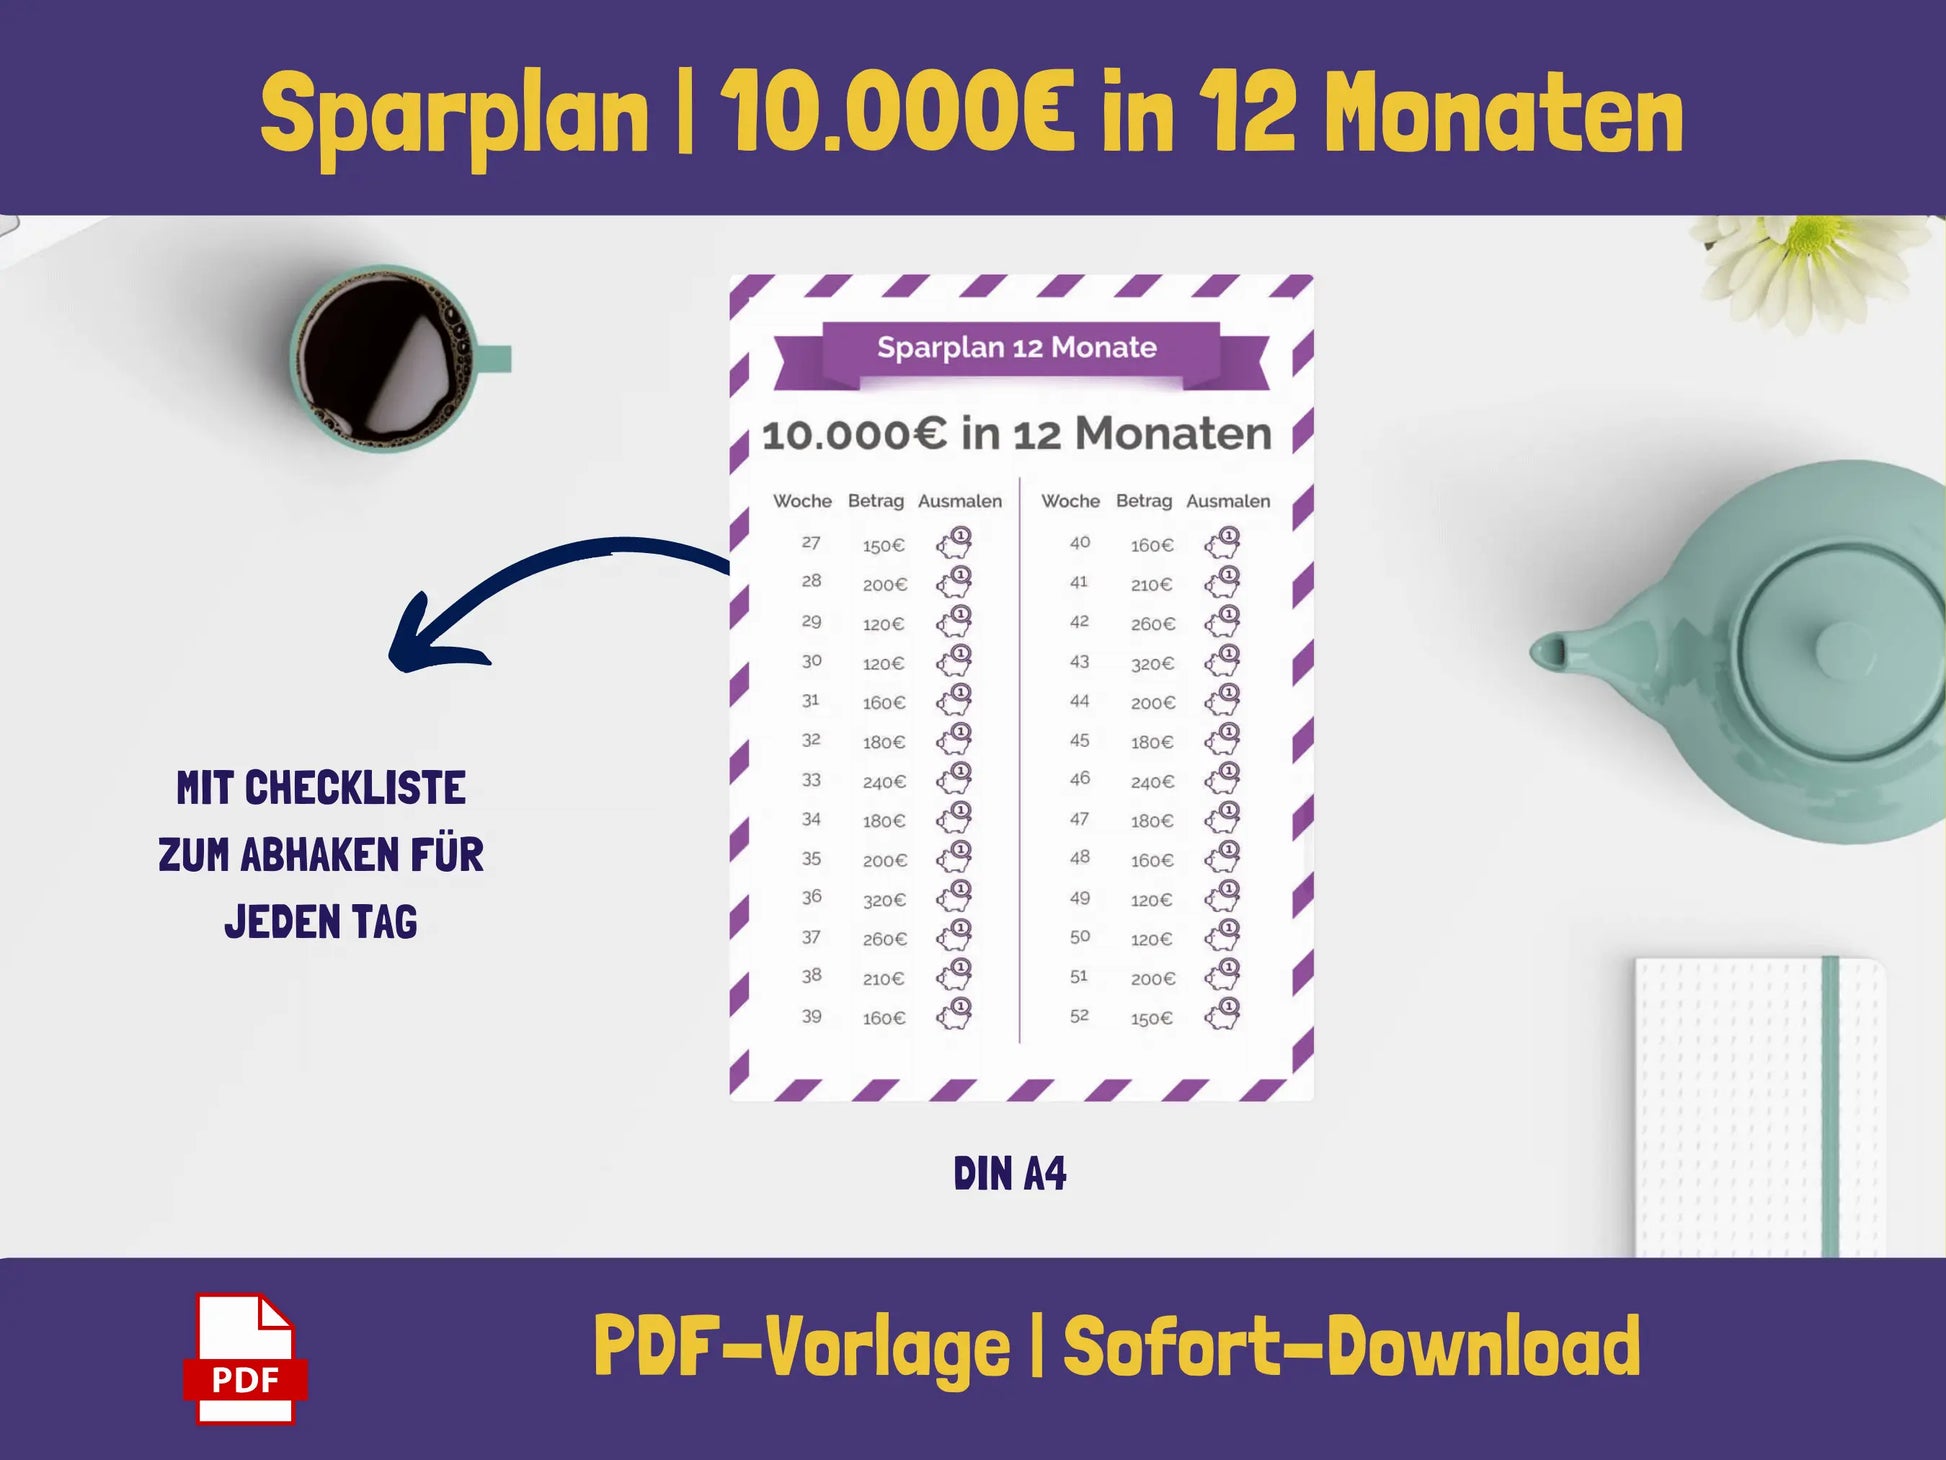 Sparplan 10.000 Euro in 12 Monaten (Schweinchen-Version) Sparplan AndreasJansen Vorlage